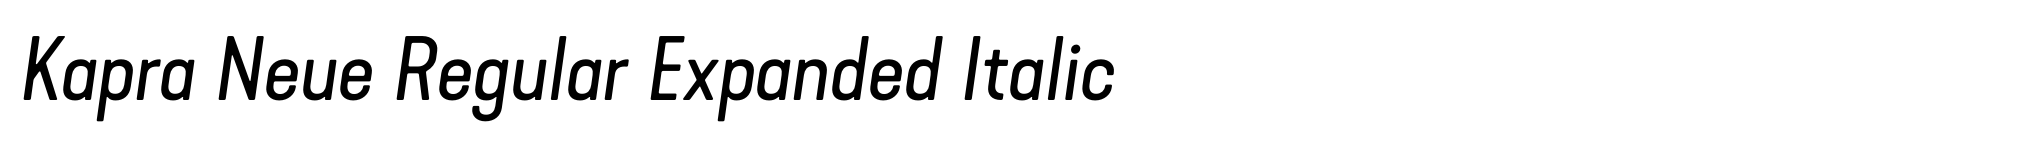 Kapra Neue Regular Expanded Italic image